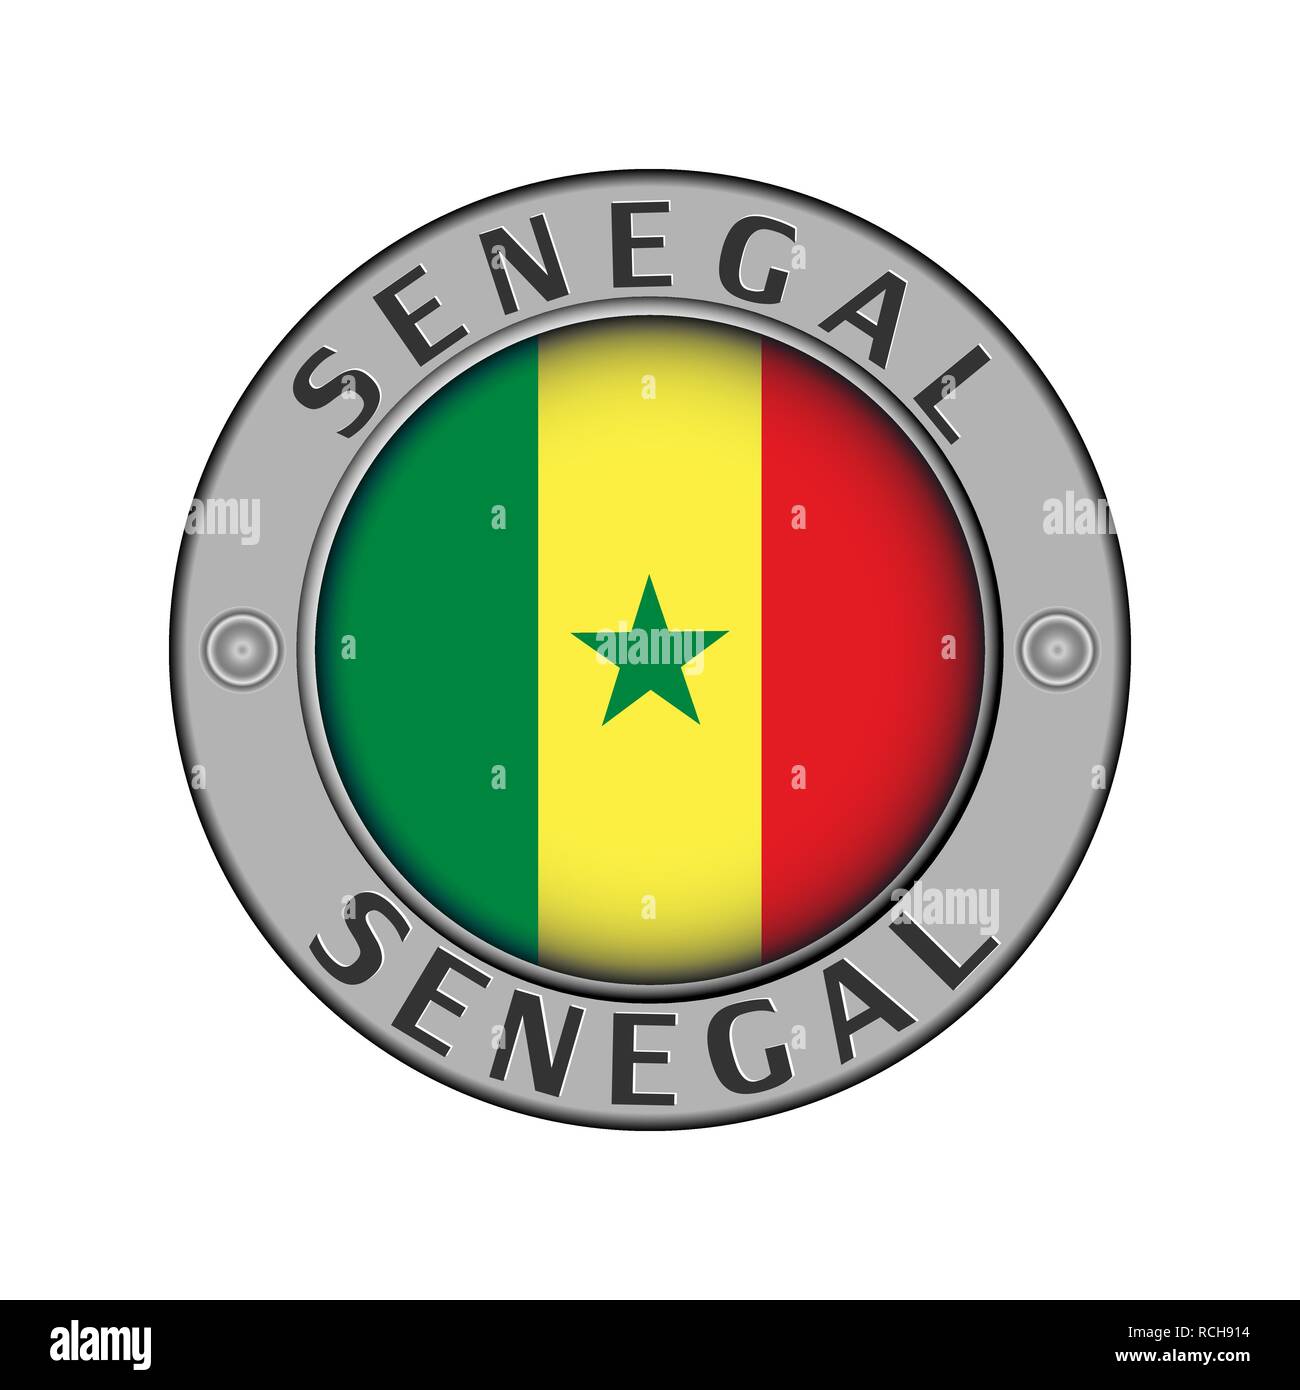 Rotondo di metallo medaglione con il nome del paese Senegal e round tricolore in centro Illustrazione Vettoriale